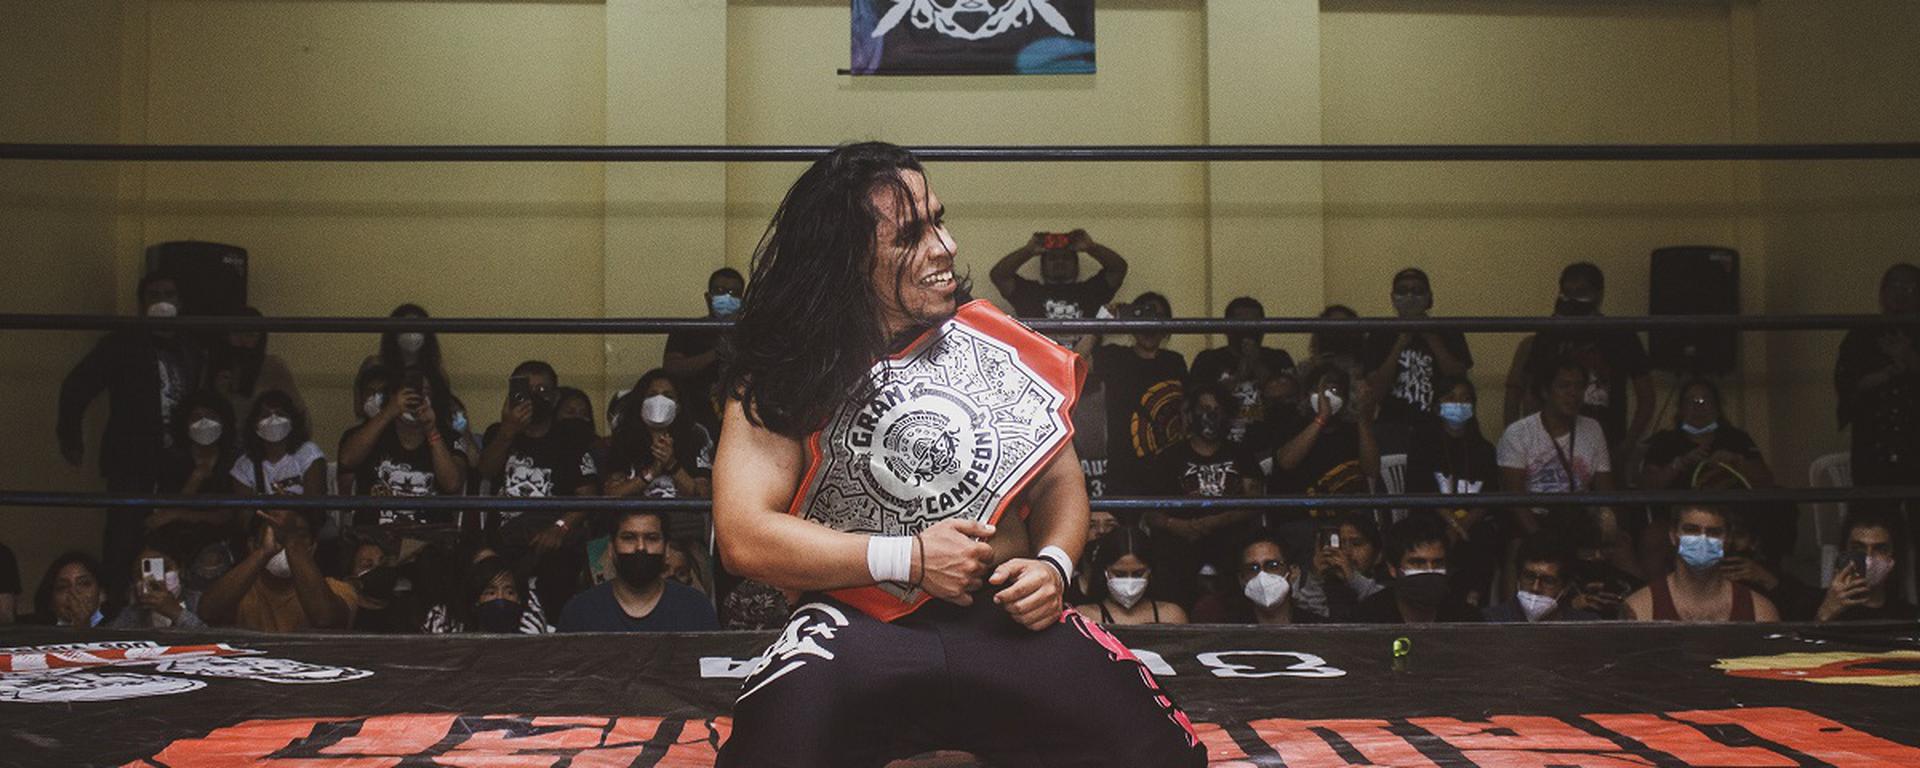 David Cava: ¿quién es el Real Gran Campeón de la lucha libre peruana en Gladiadores?